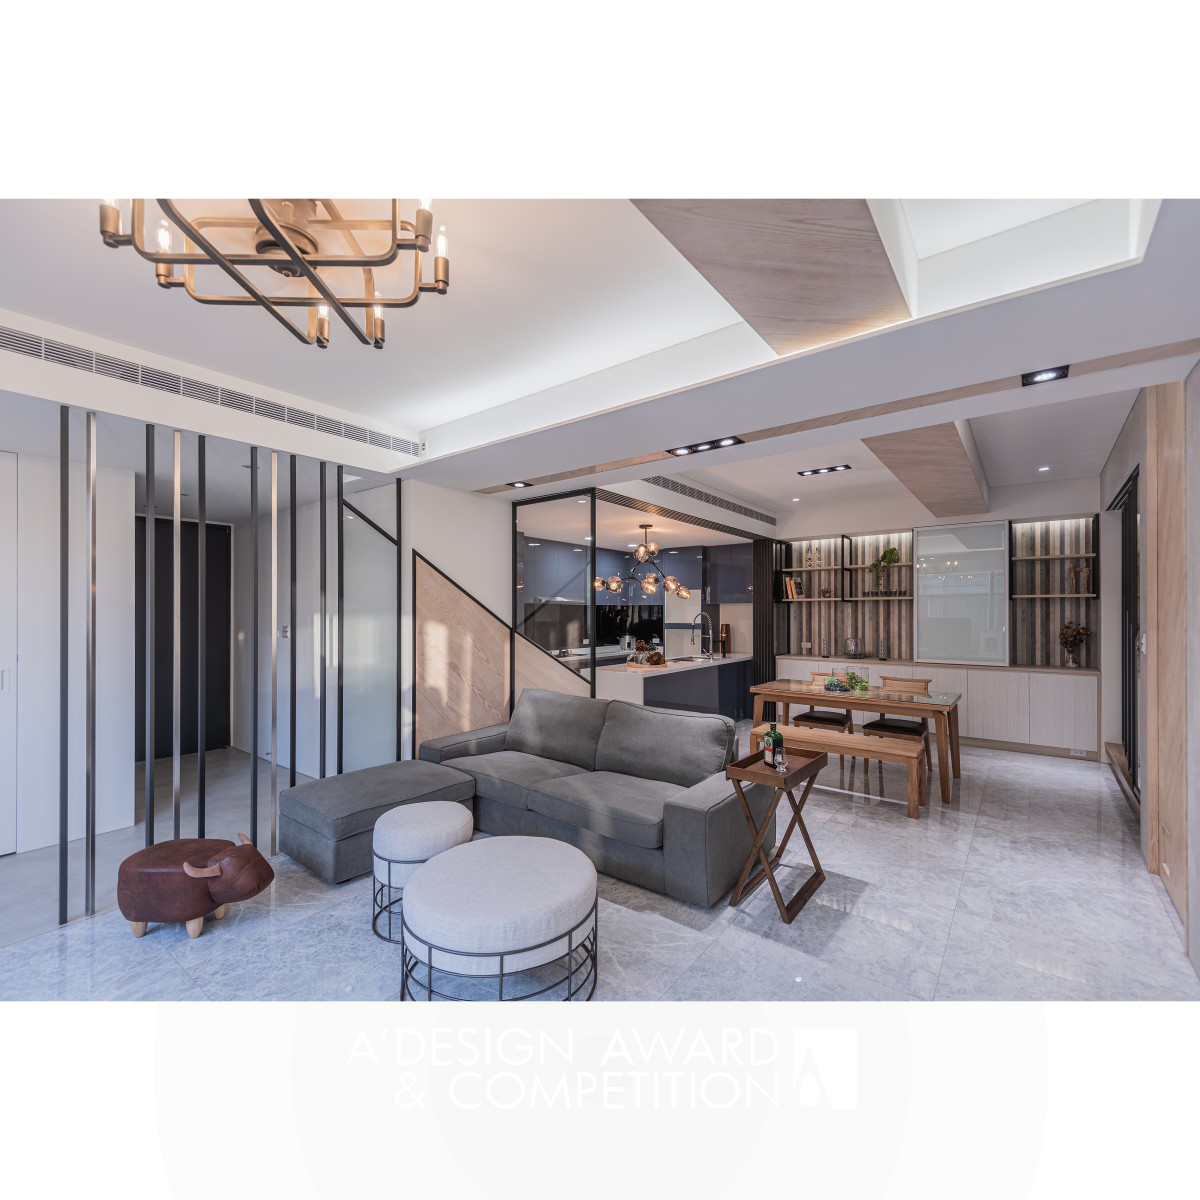 Glowing House Residential by Tzu-Yi Yang and Chun Chun Yang